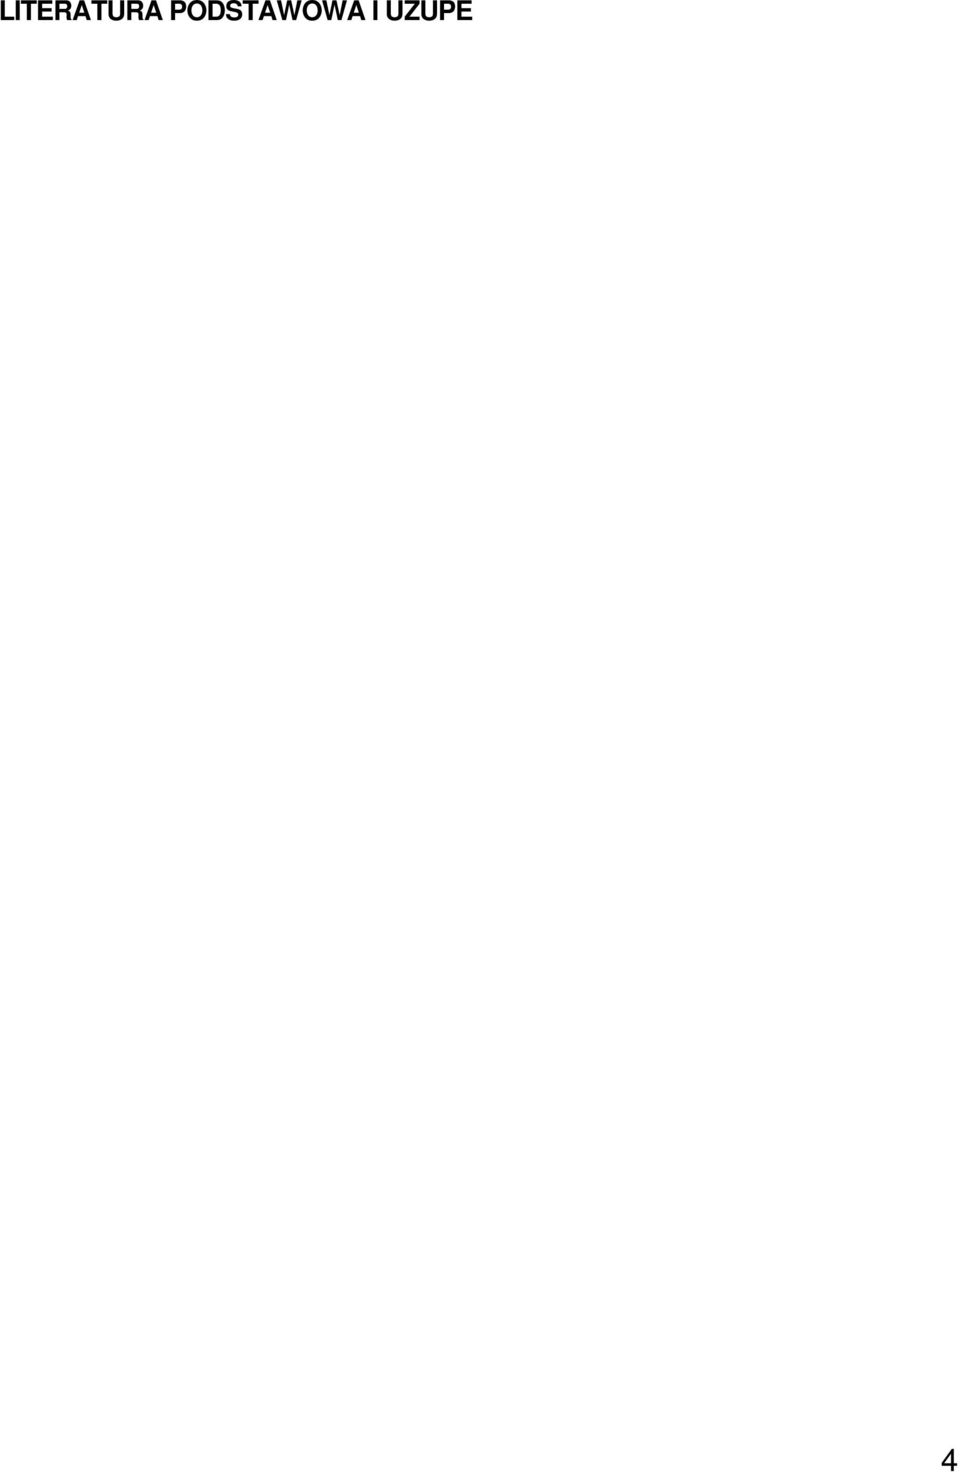 4. Durlik: Inżynieria zarządzania. Strategie organizacji i zarządzania produkcją, Placet, Warszawa 000 5. M. Jedliński: Zarządzanie operacyjne, Wyd. Nauk. US, Szczecin 00 6. D. Waters: Zarządzanie operacyjne.